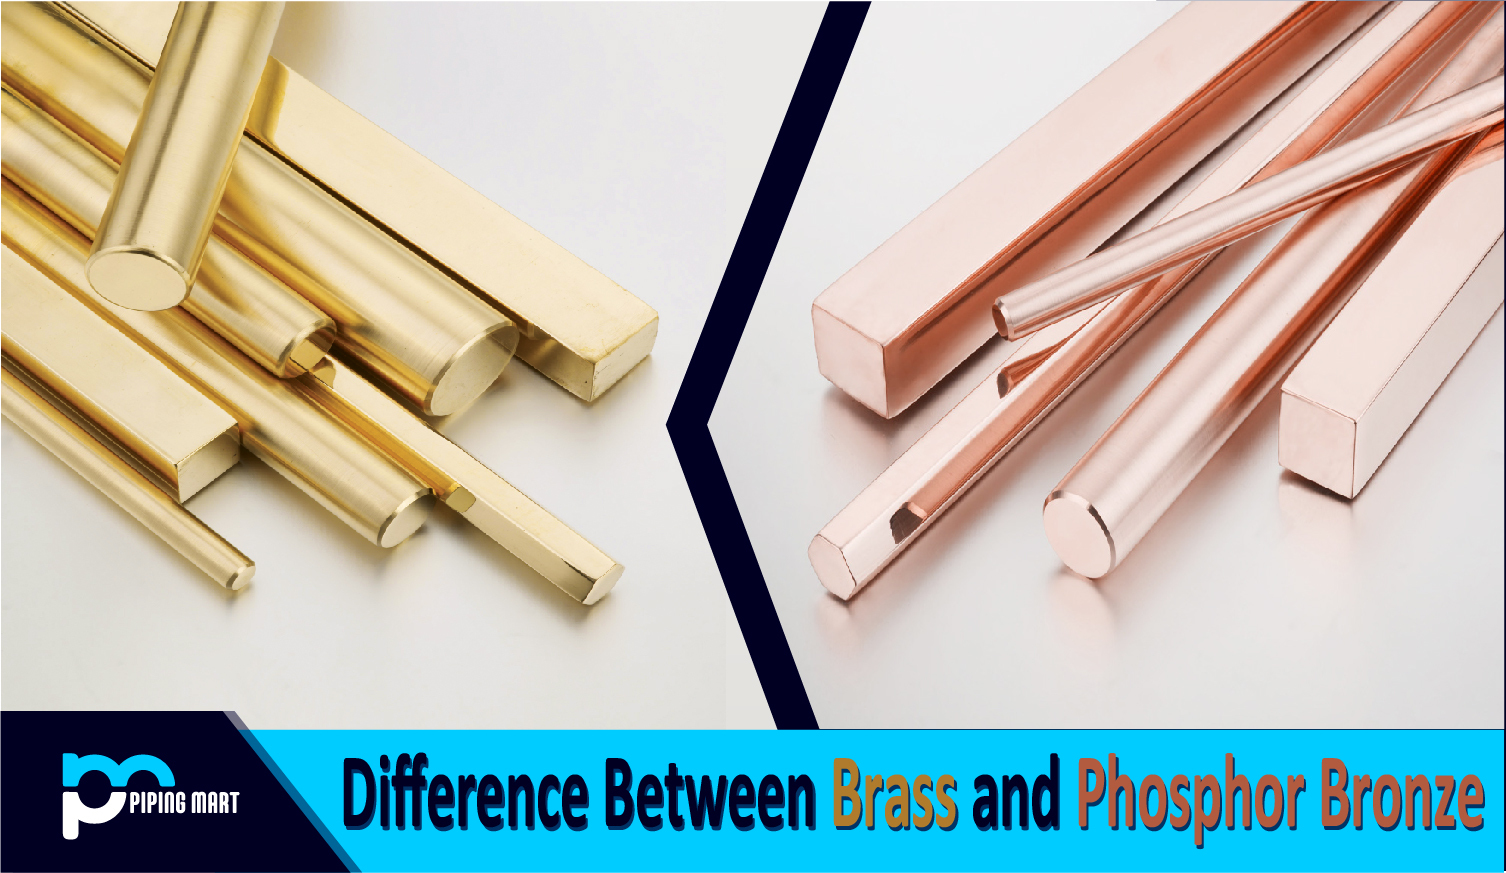 between Brass and Phosphor Bronze